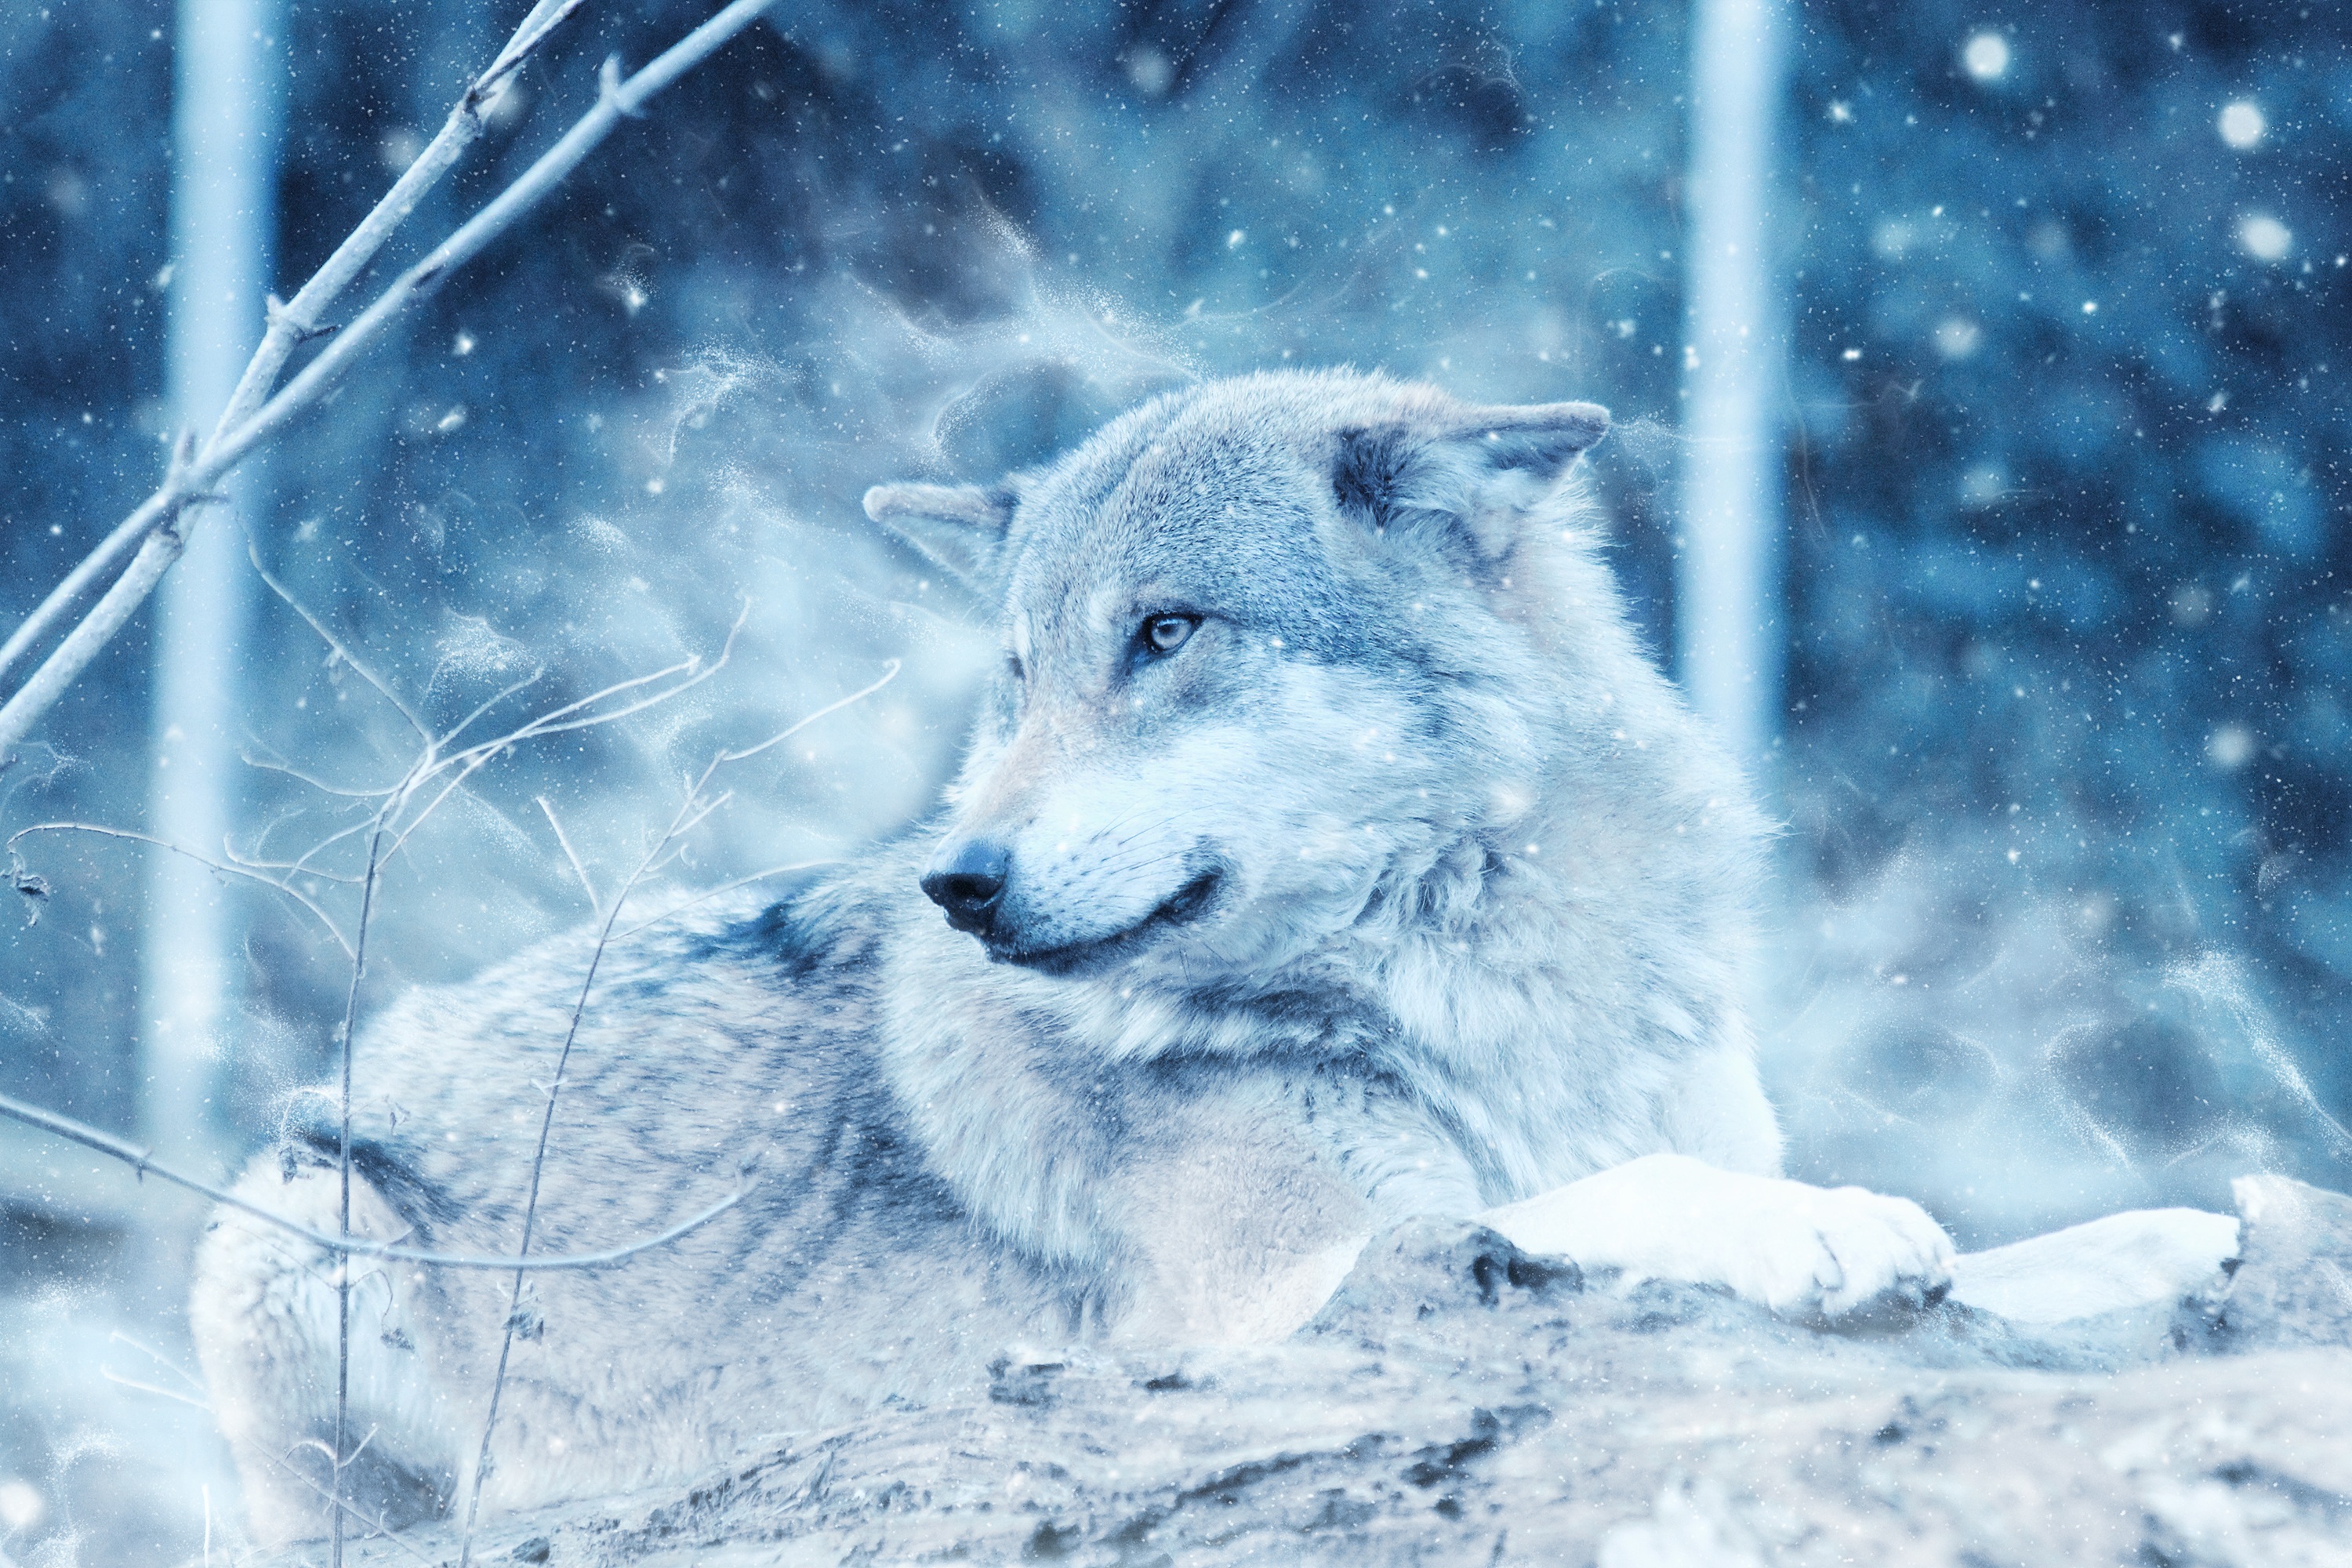 Photoshop predator, wolf, opinion, animals 4k Wallpaper